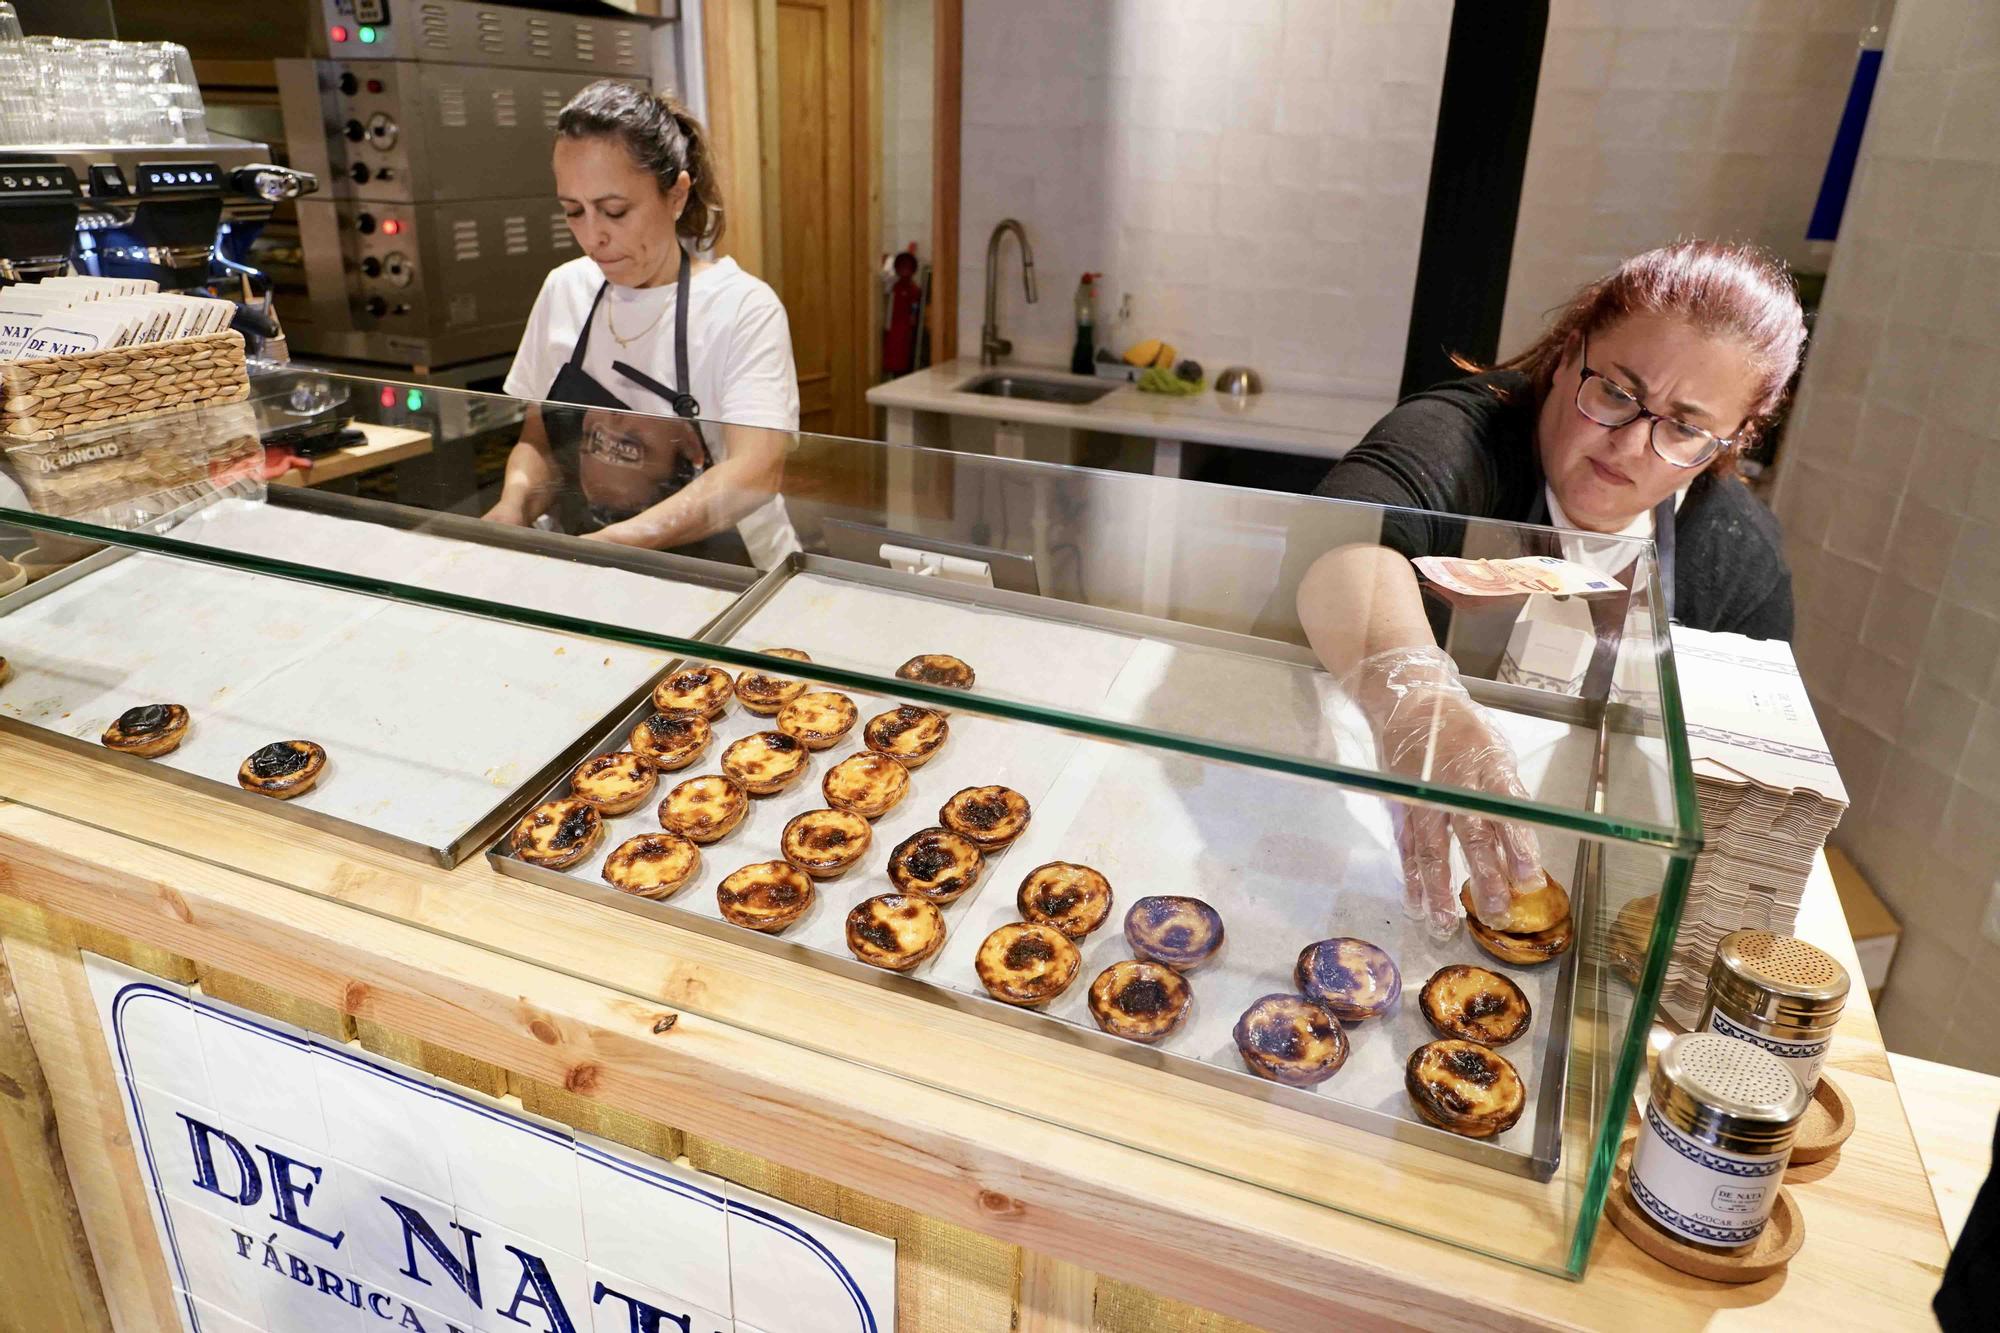 La pastelería de la cadena portuguesa Da Nata abre un local en la calle Especería, en pleno Centro de Málaga.